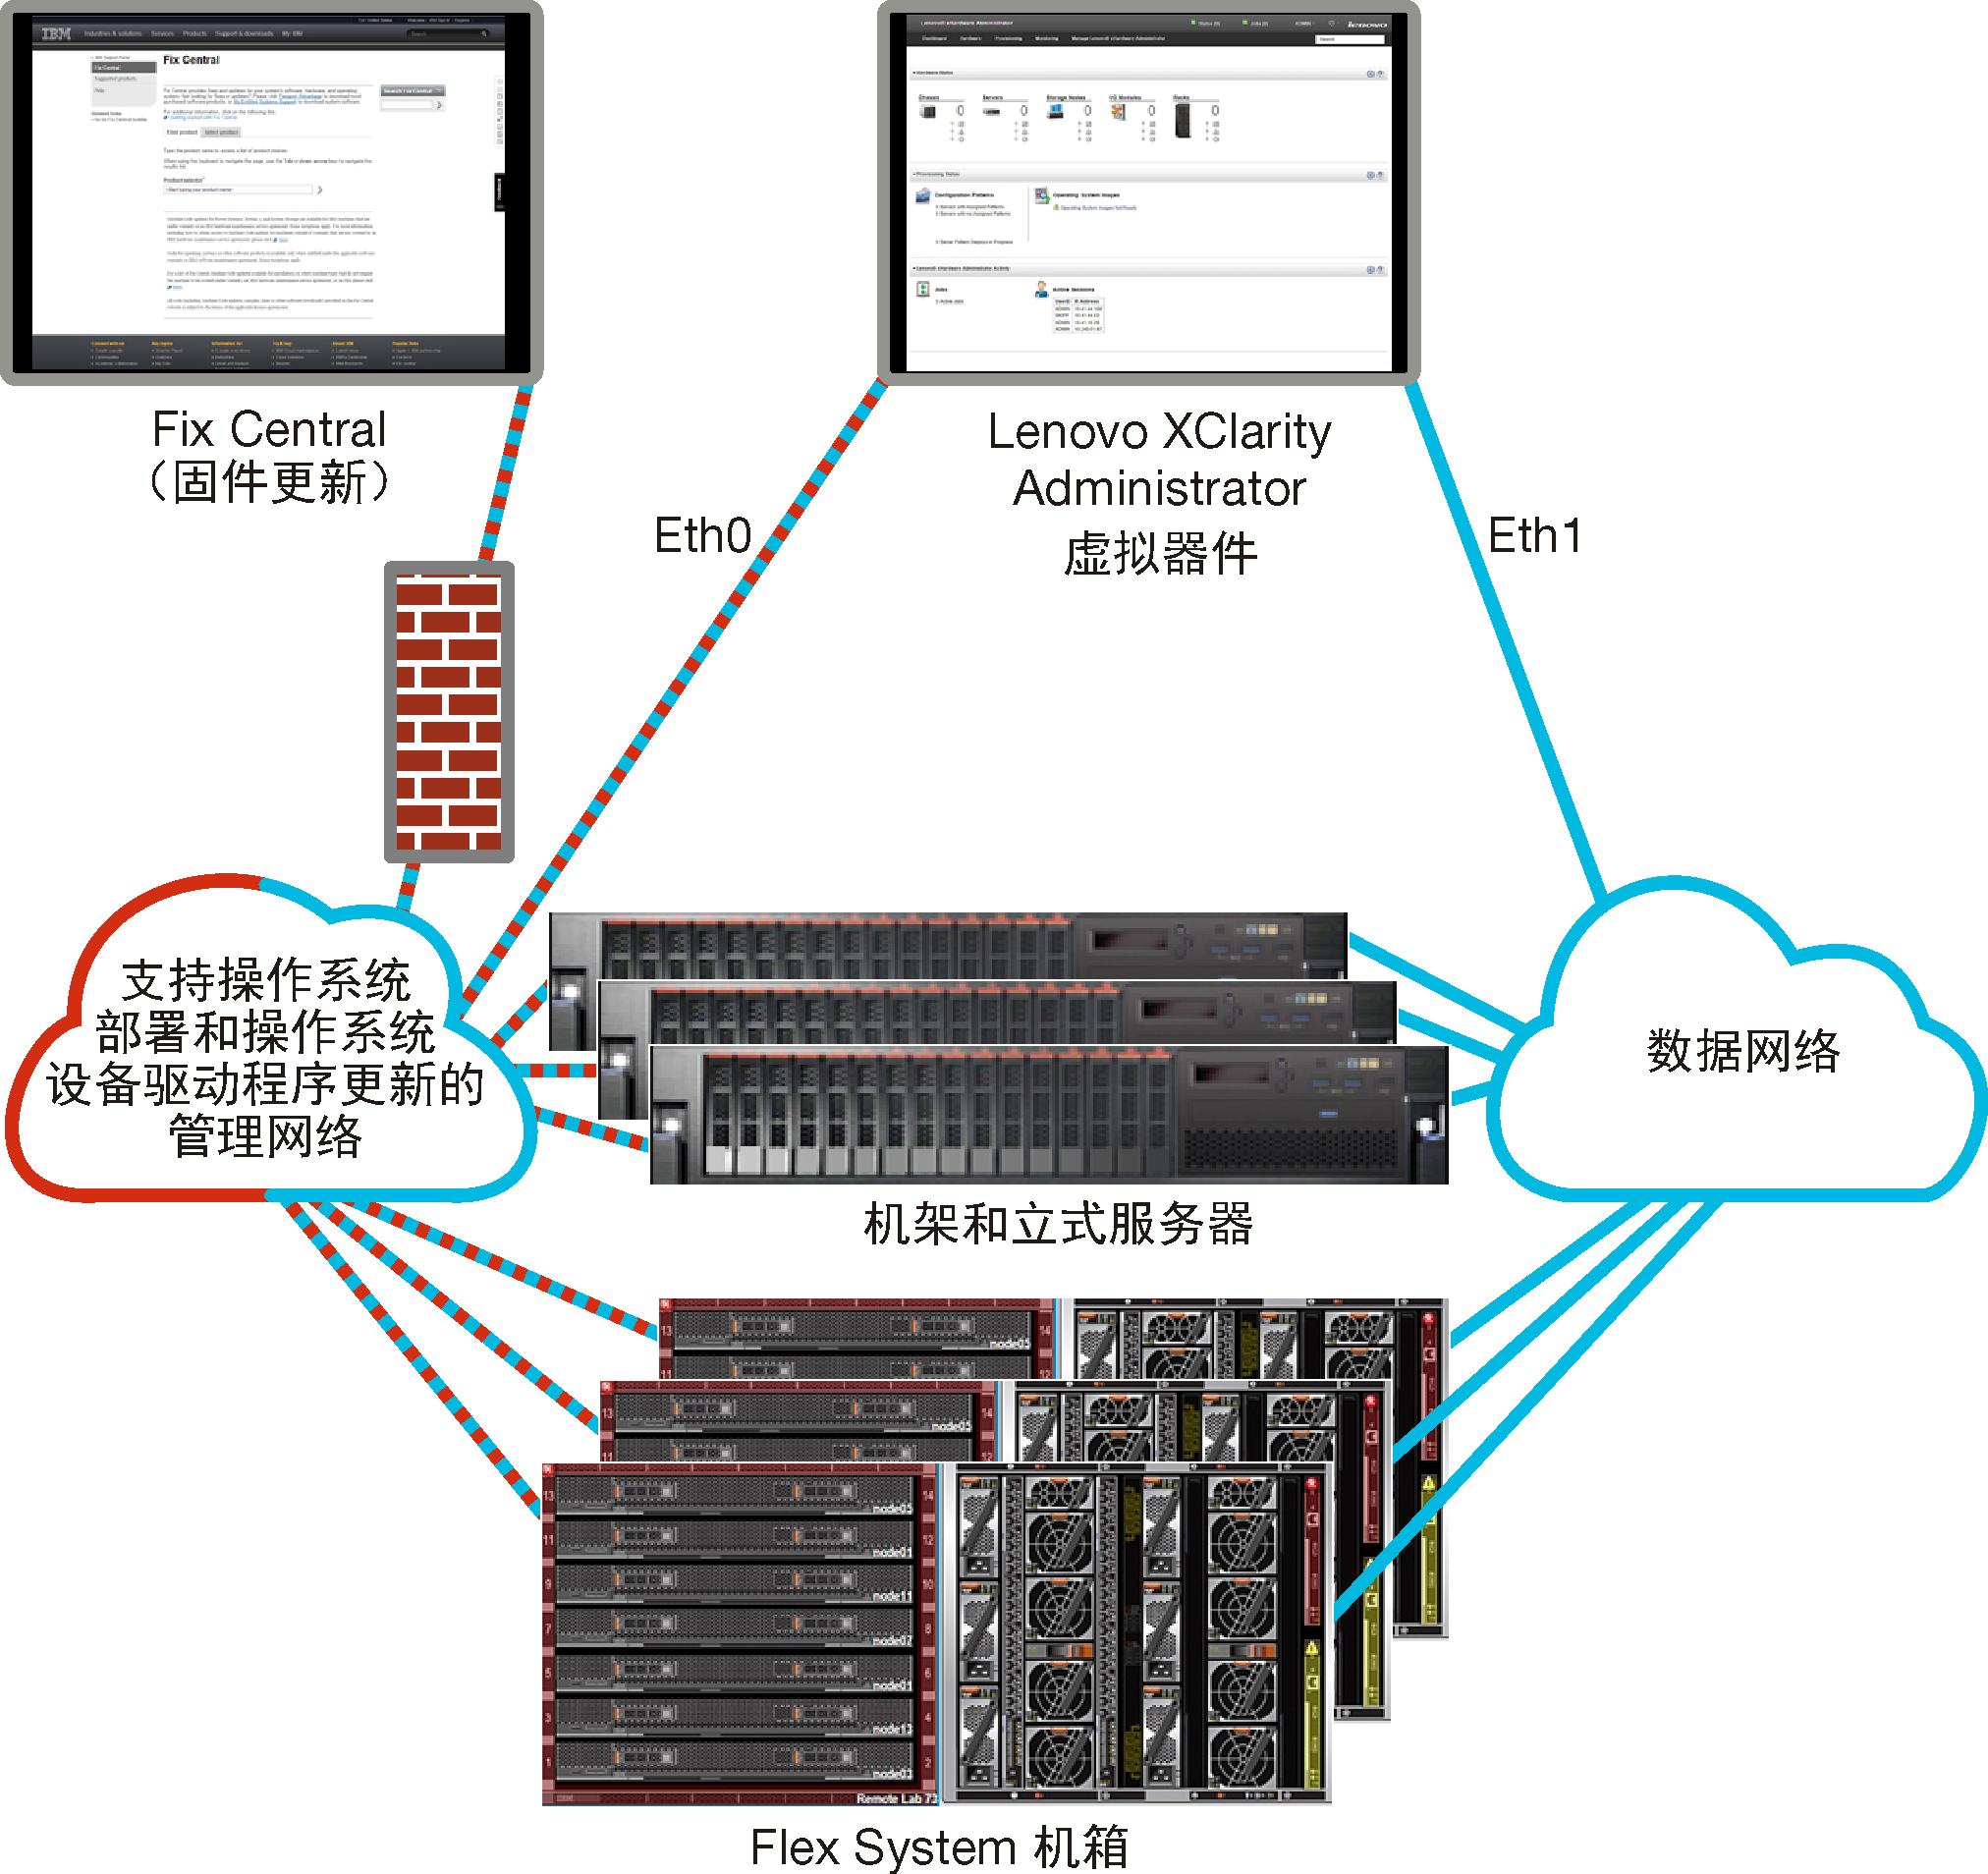 概括地显示隔离的数据和管理网络的图形。操作系统部署网络被设置为管理网络的一部分。